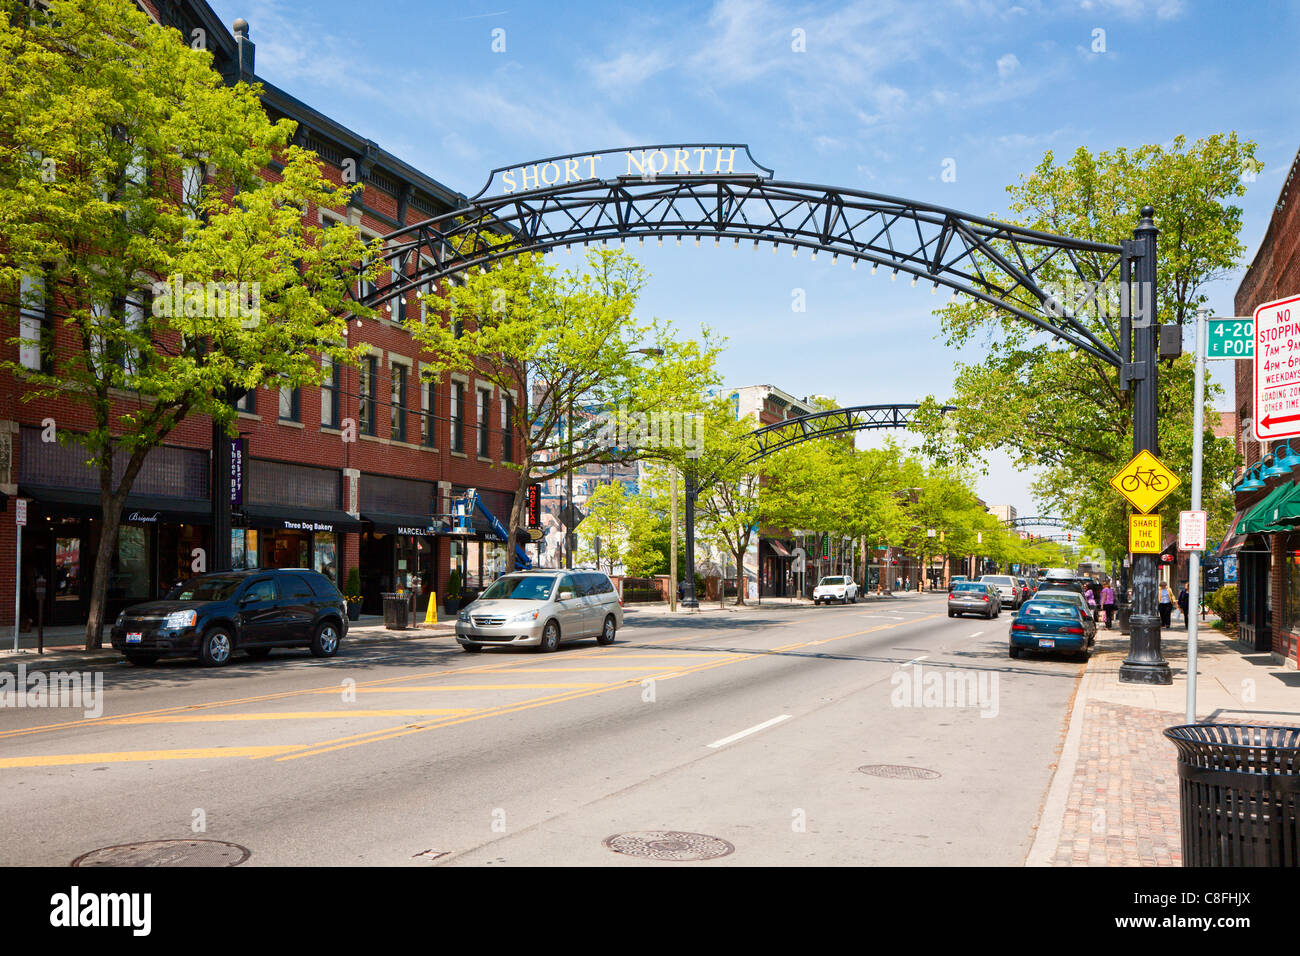 Metall wölbt sich über High Street im Stadtteil kurze Nord in Columbus, Ohio. Stockfoto